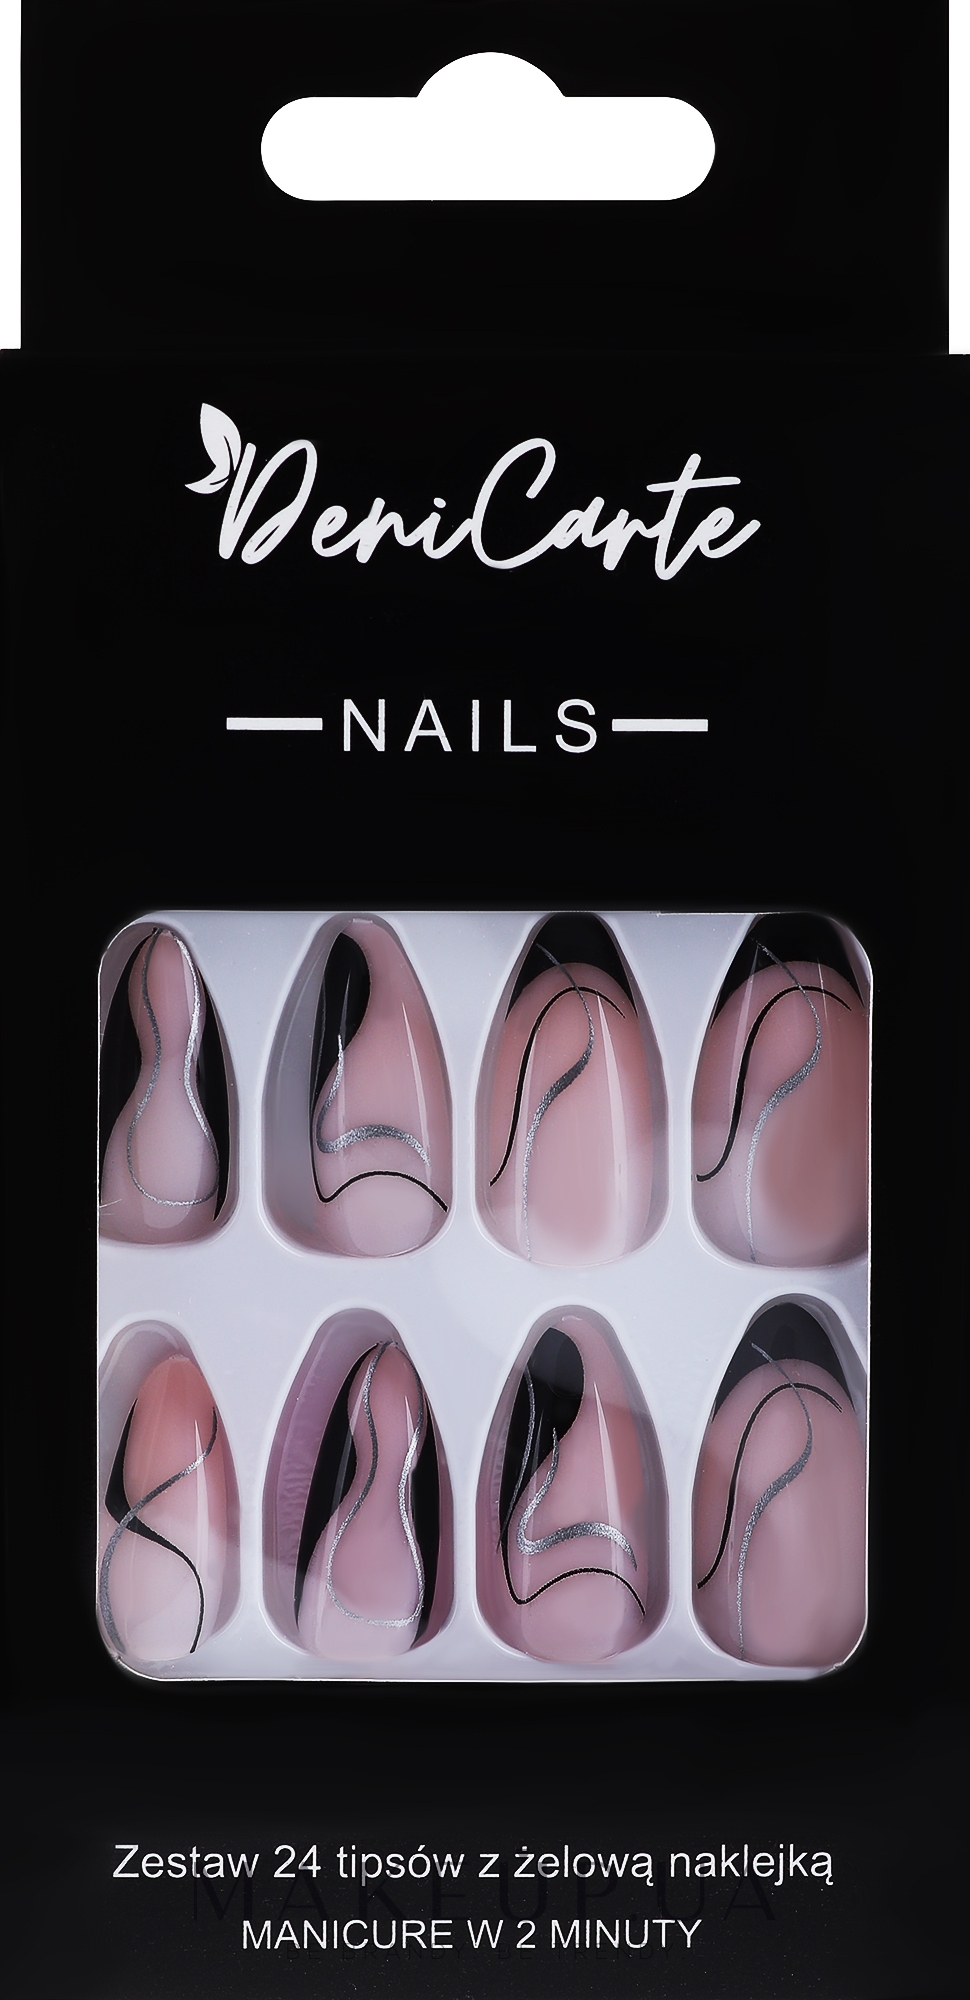 Накладные ногти с мотивом из нитей черного и серебристого цвета, 24 шт. - Deni Carte Nails Natural 2 Minutes Manicure  — фото 24шт